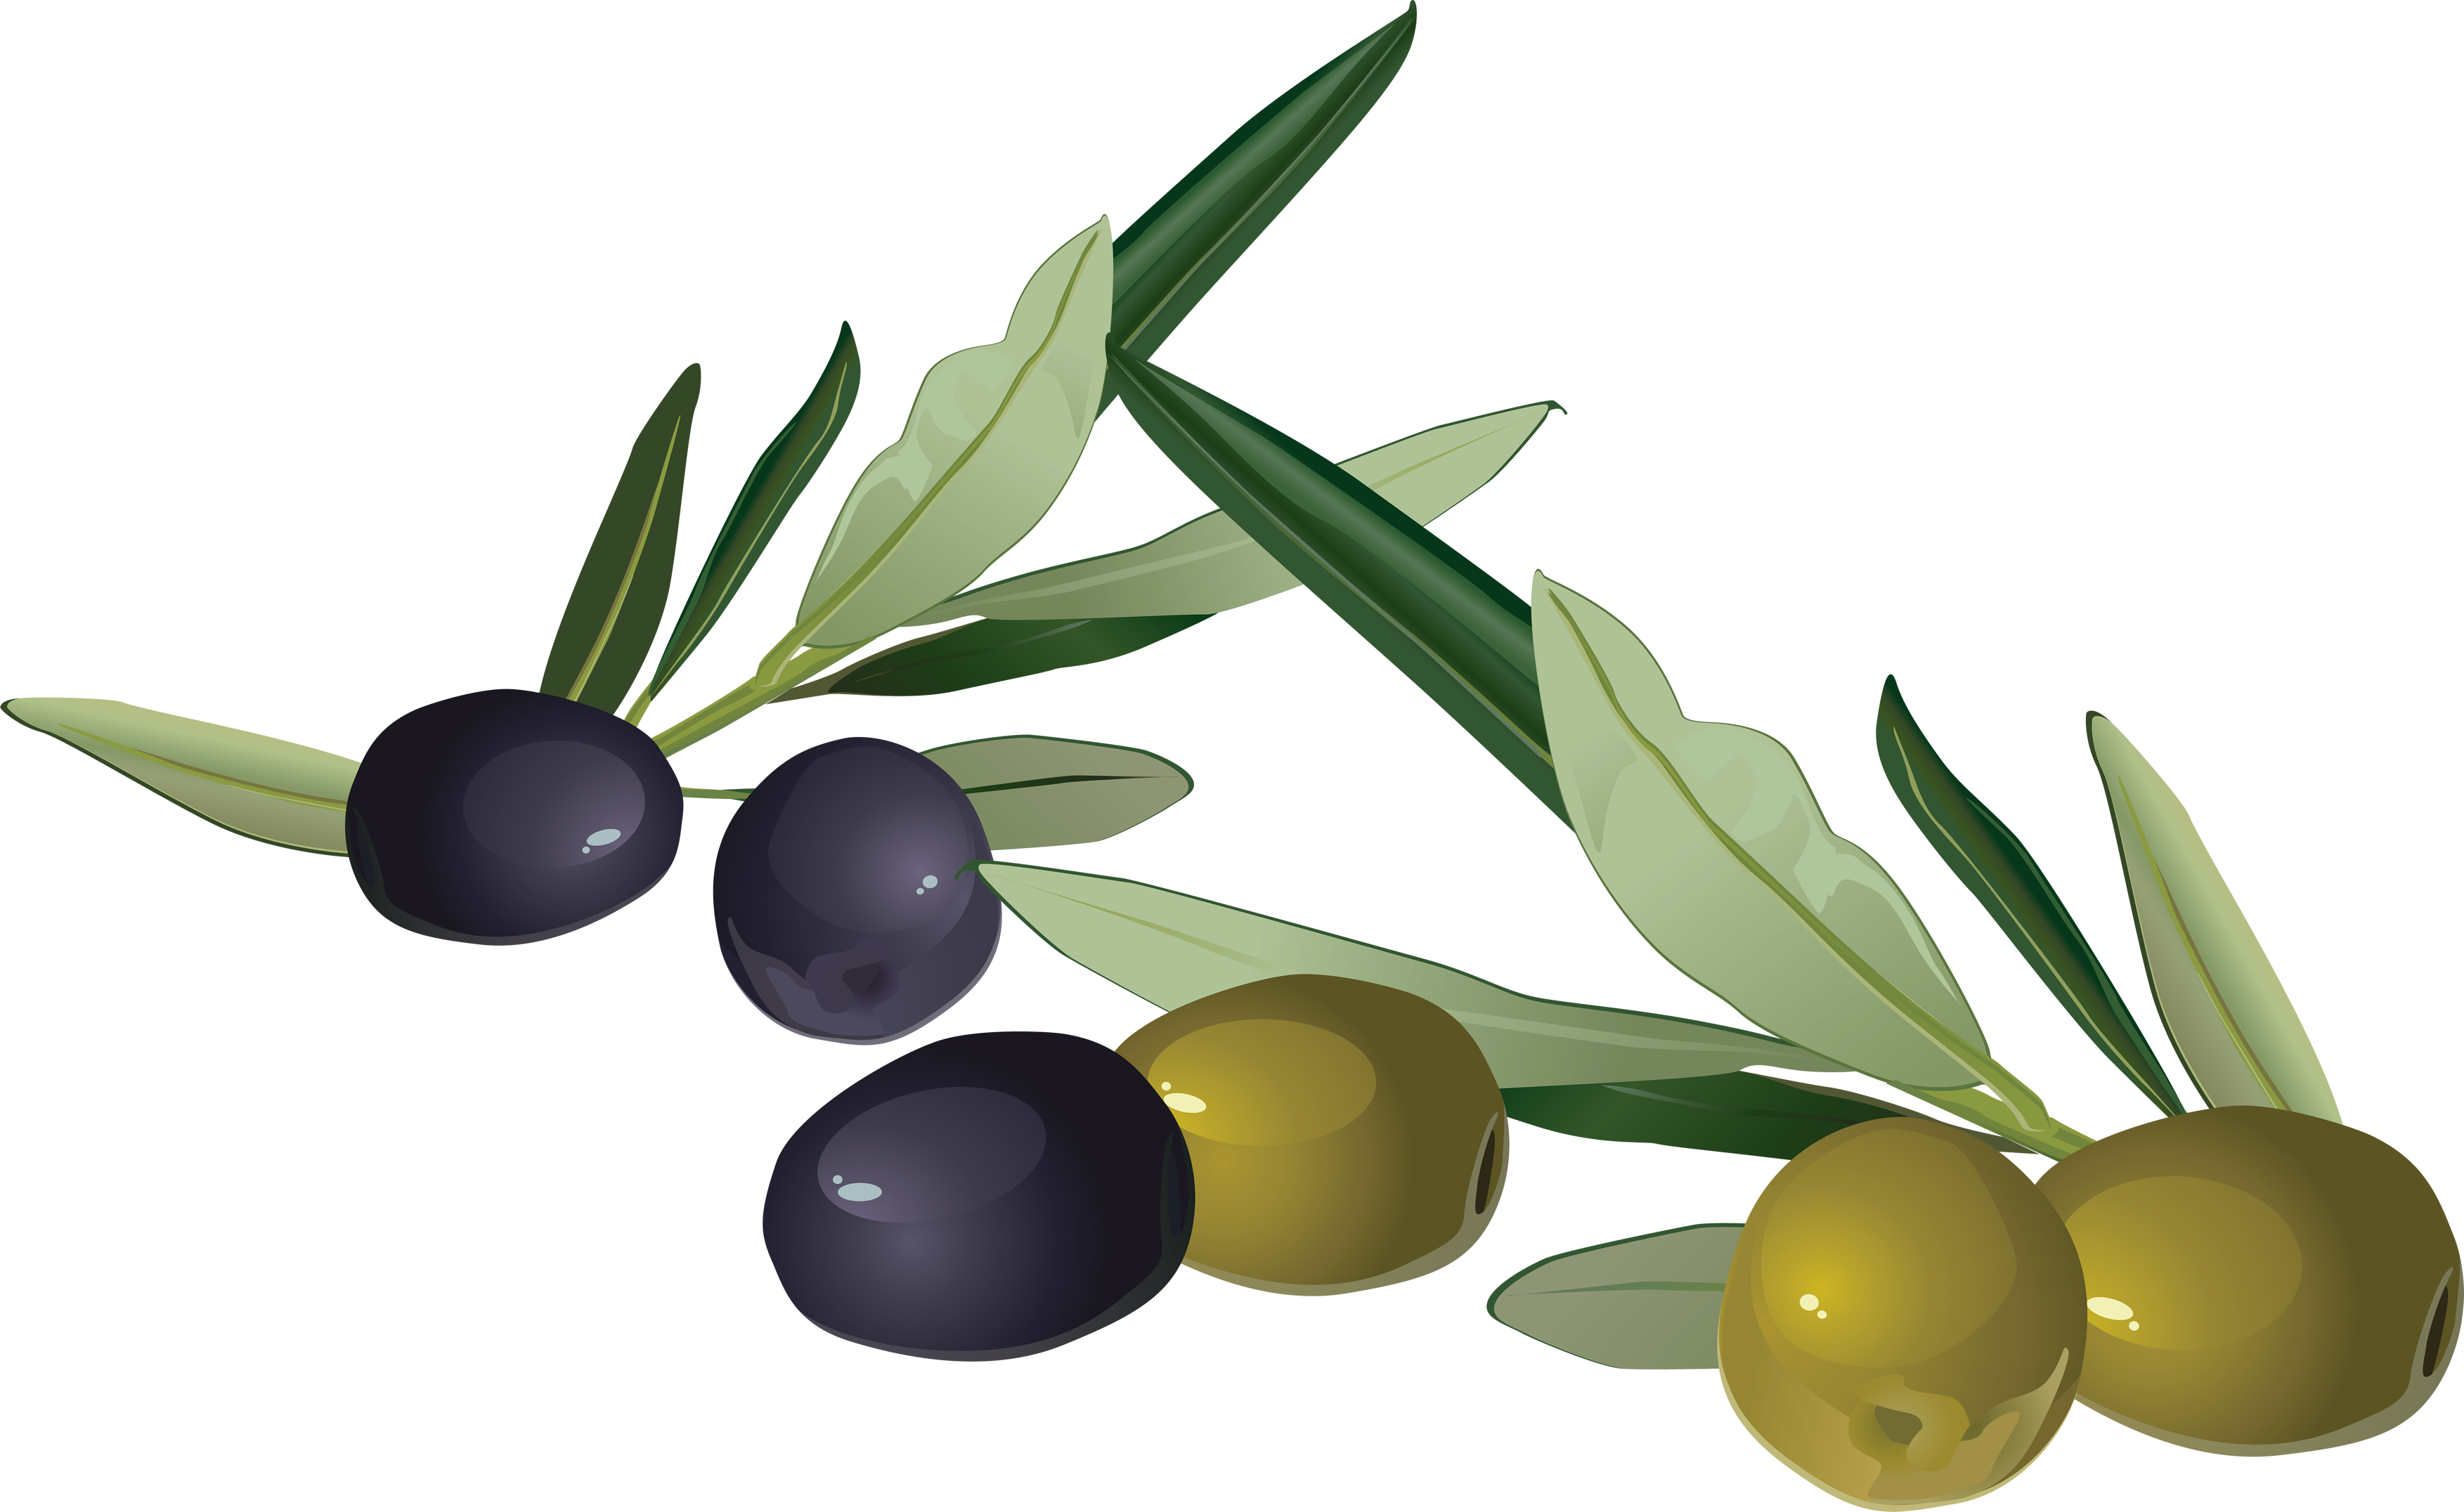 olives, olive png images download crazypngm crazy png images download #30080